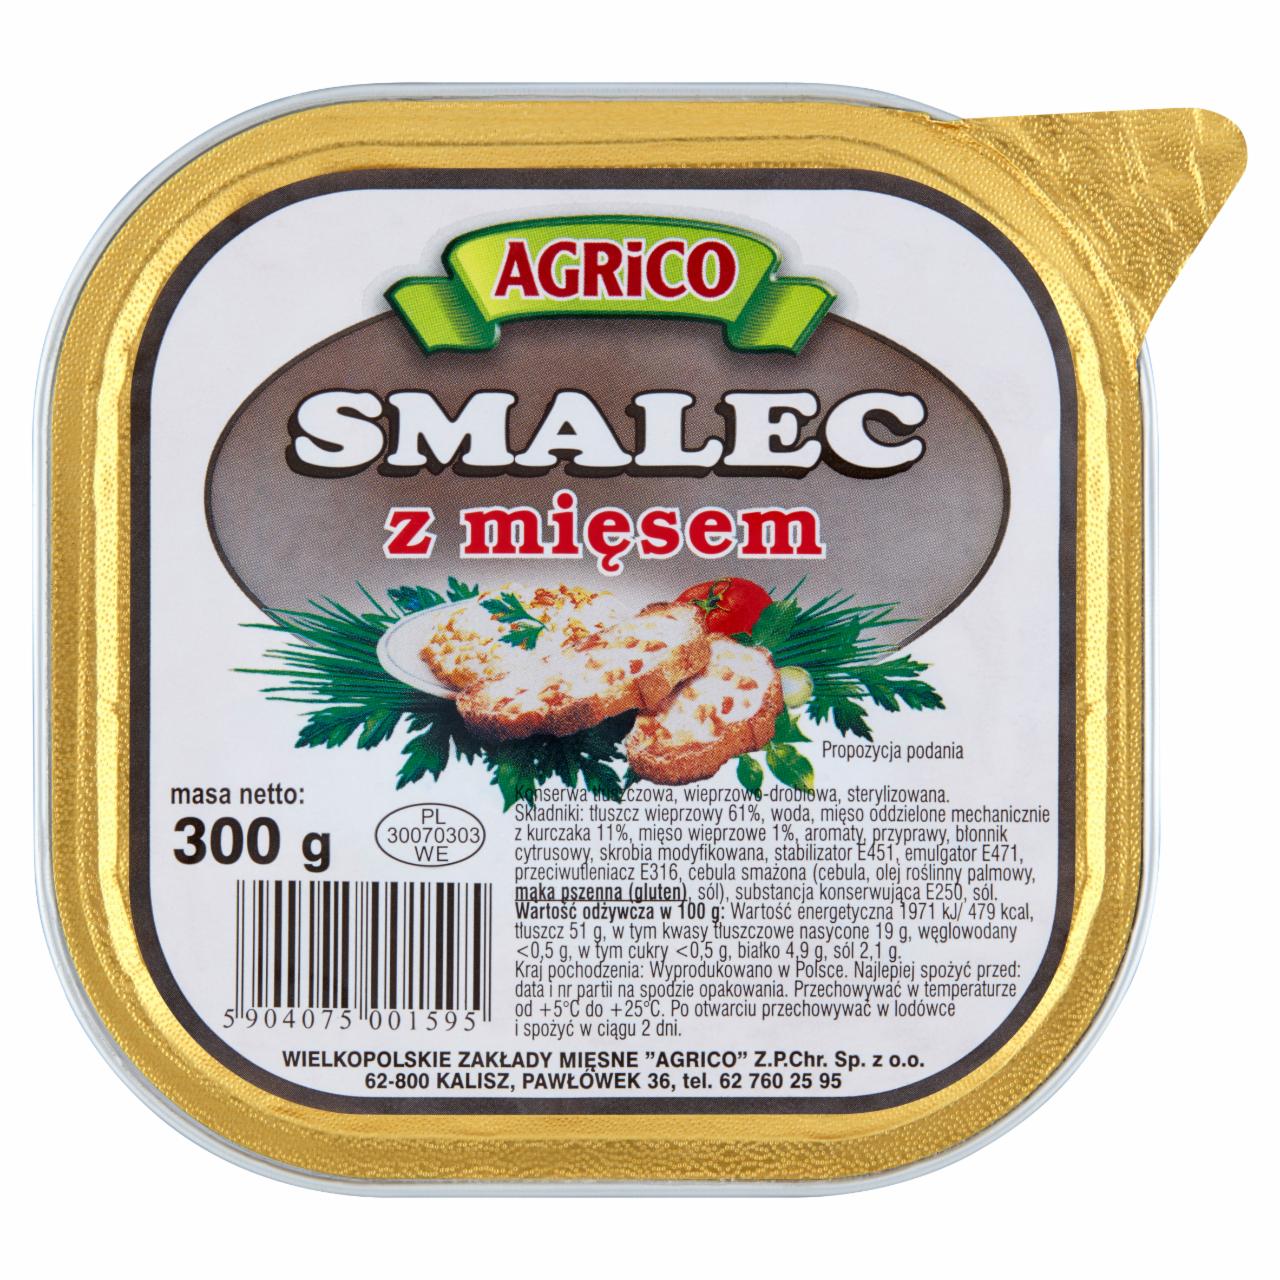 Zdjęcia - Agrico Smalec z mięsem 300 g